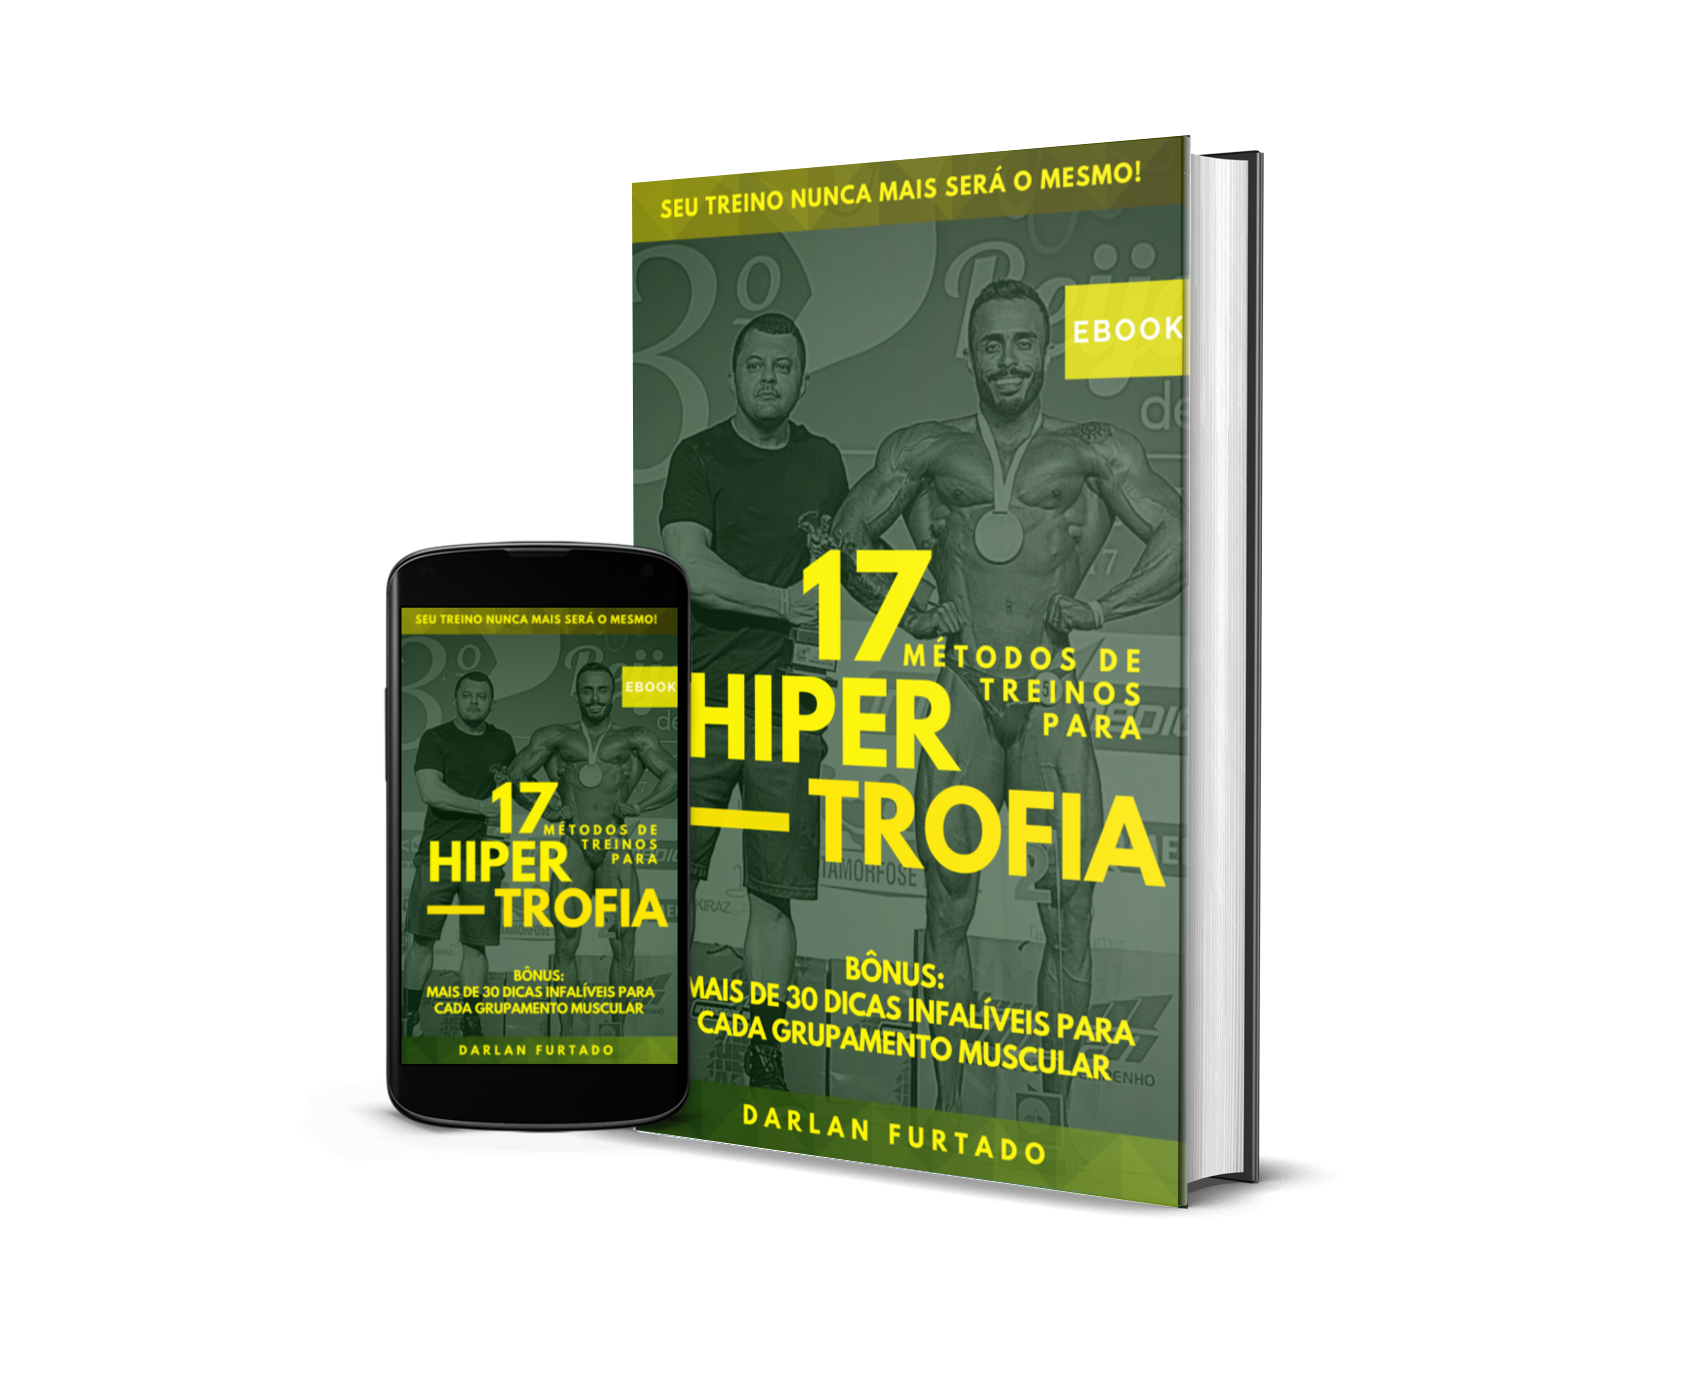 17 Métodos de treinos para Hipertrofia